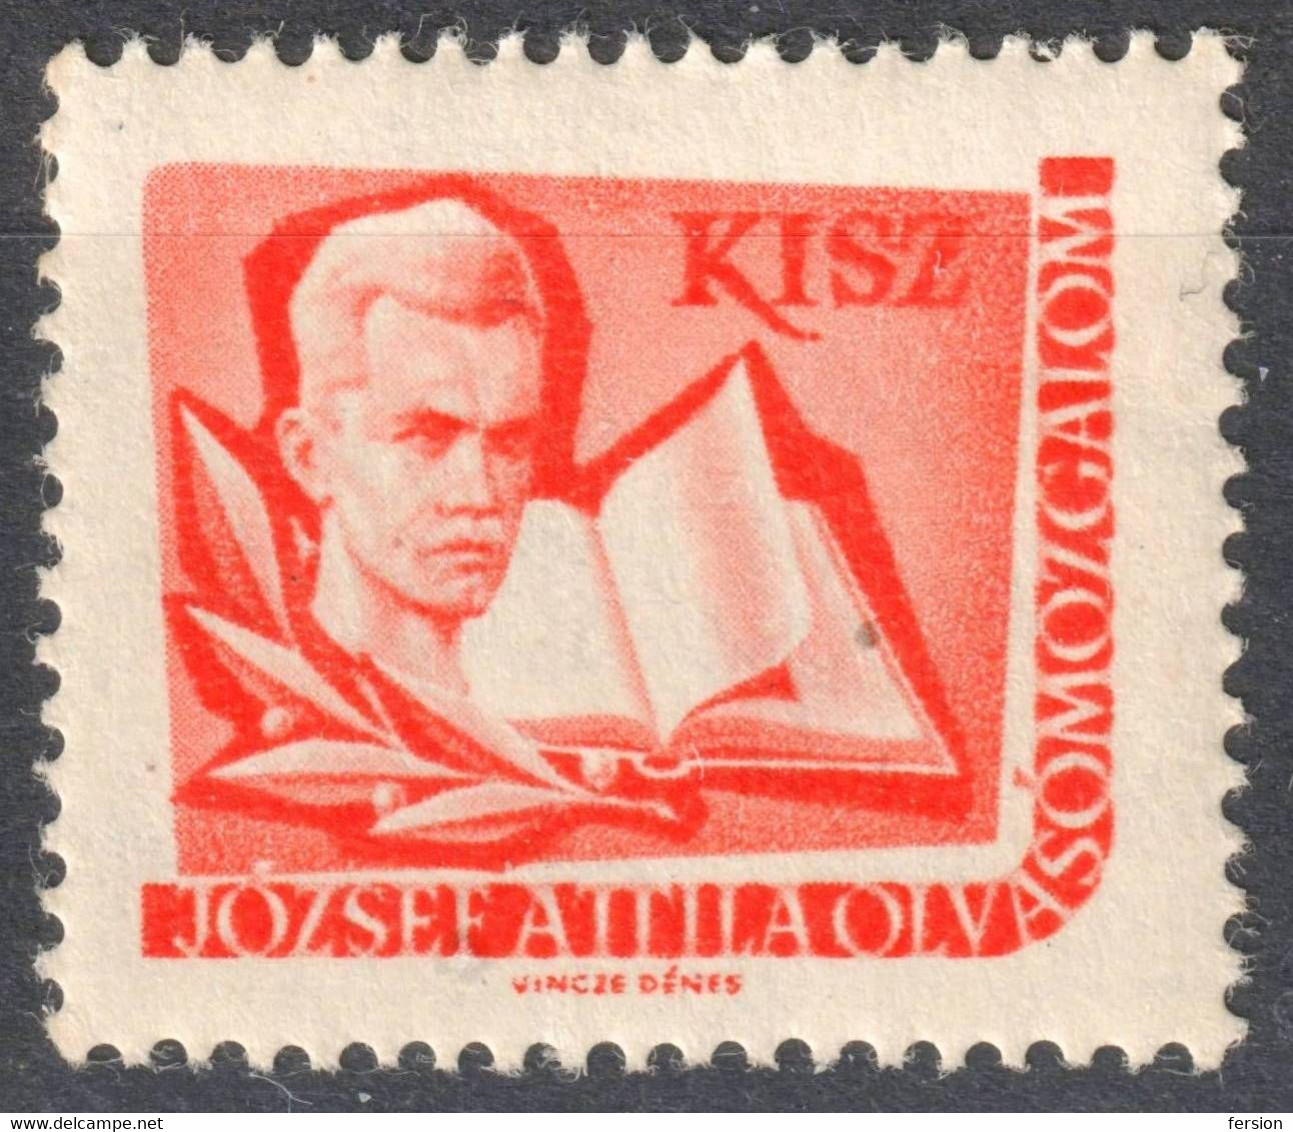 József Attila Poet Book KISZ Hungarian Young Communist League LIBRARY Member LABEL CINDERELLA VIGNETTE Hungary - Servizio